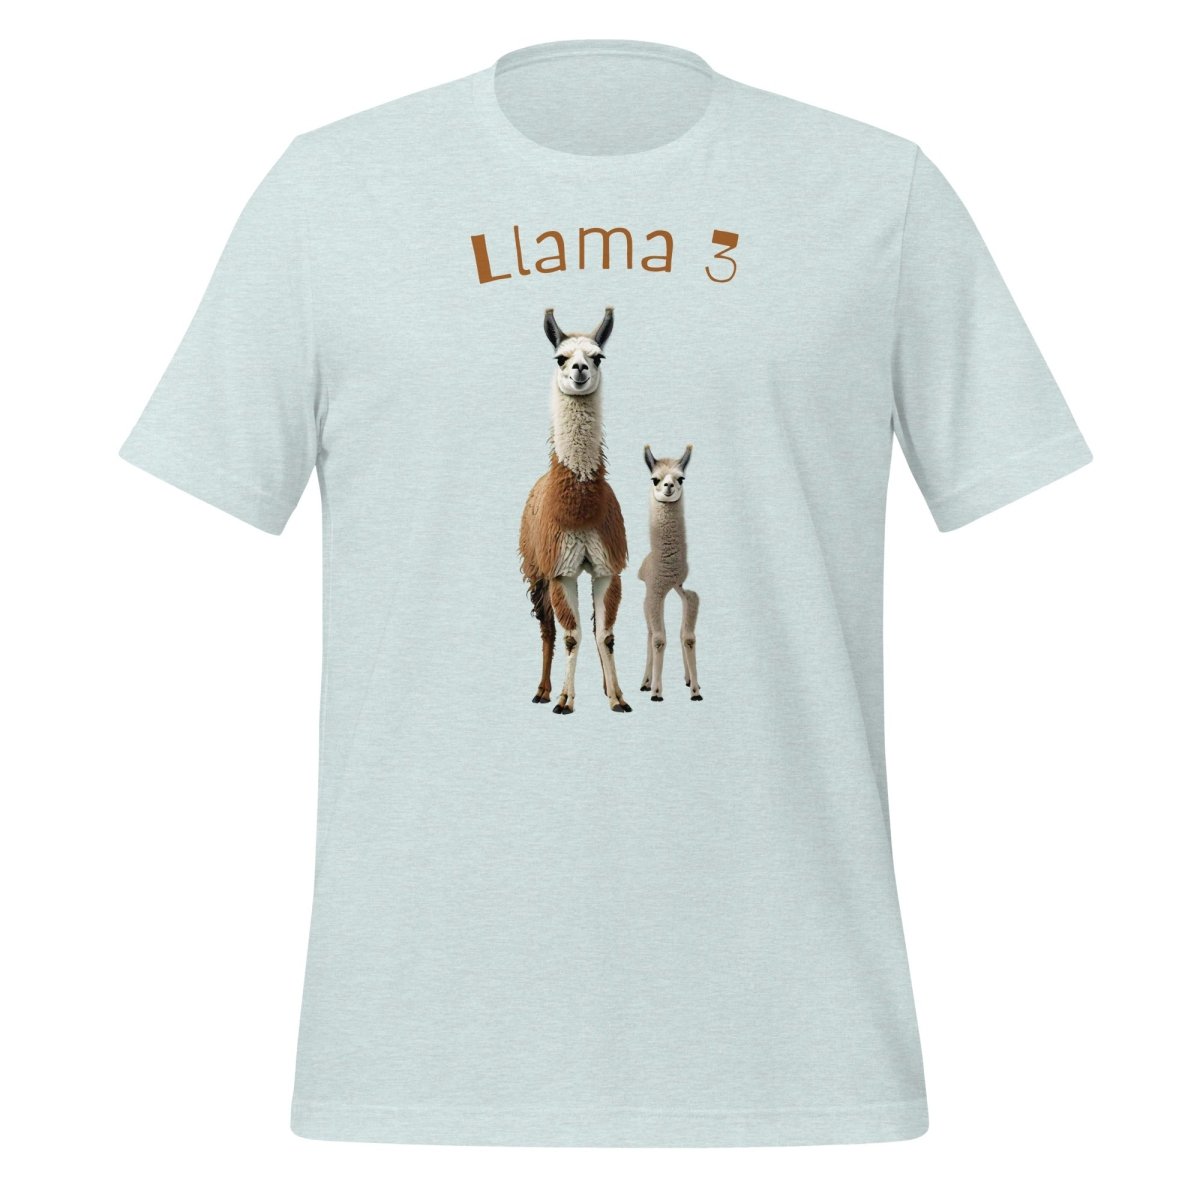 3 Llamas by Llama 3 T-Shirt (unisex) - AI Store